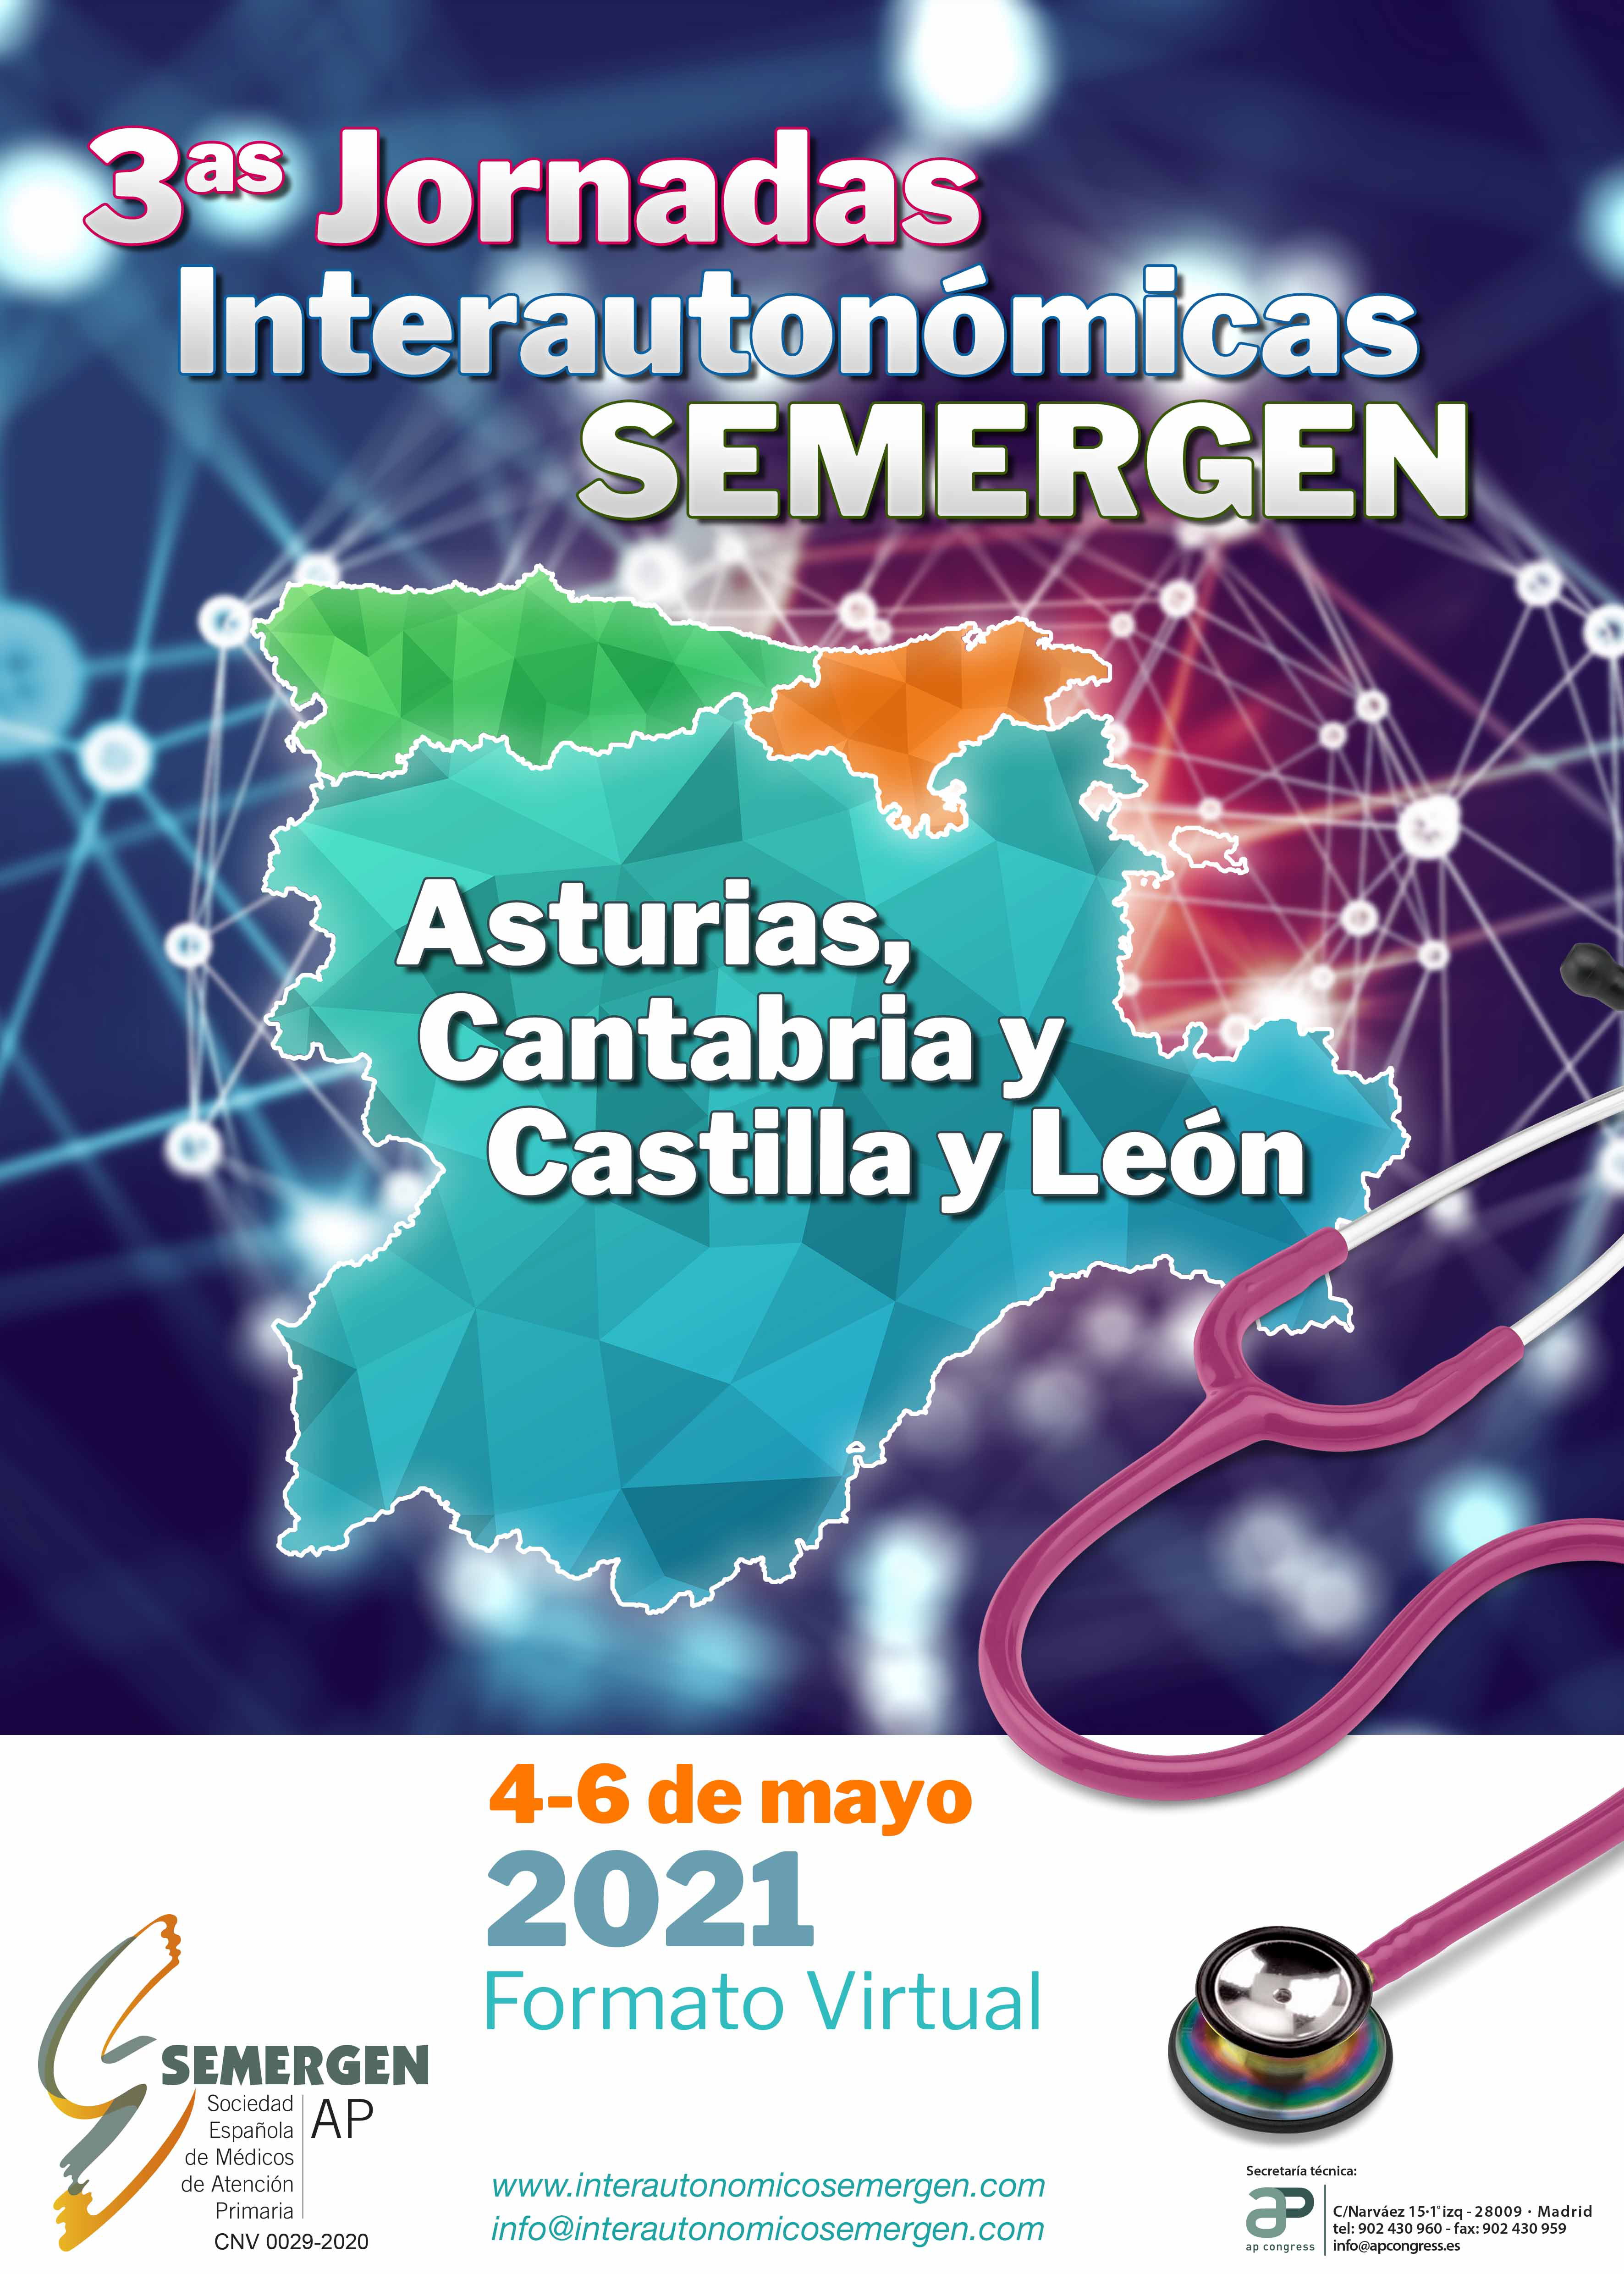 3as Jornadas  Interautonómicas SEMERGEN. Asturias, Cantabria y Castilla y León